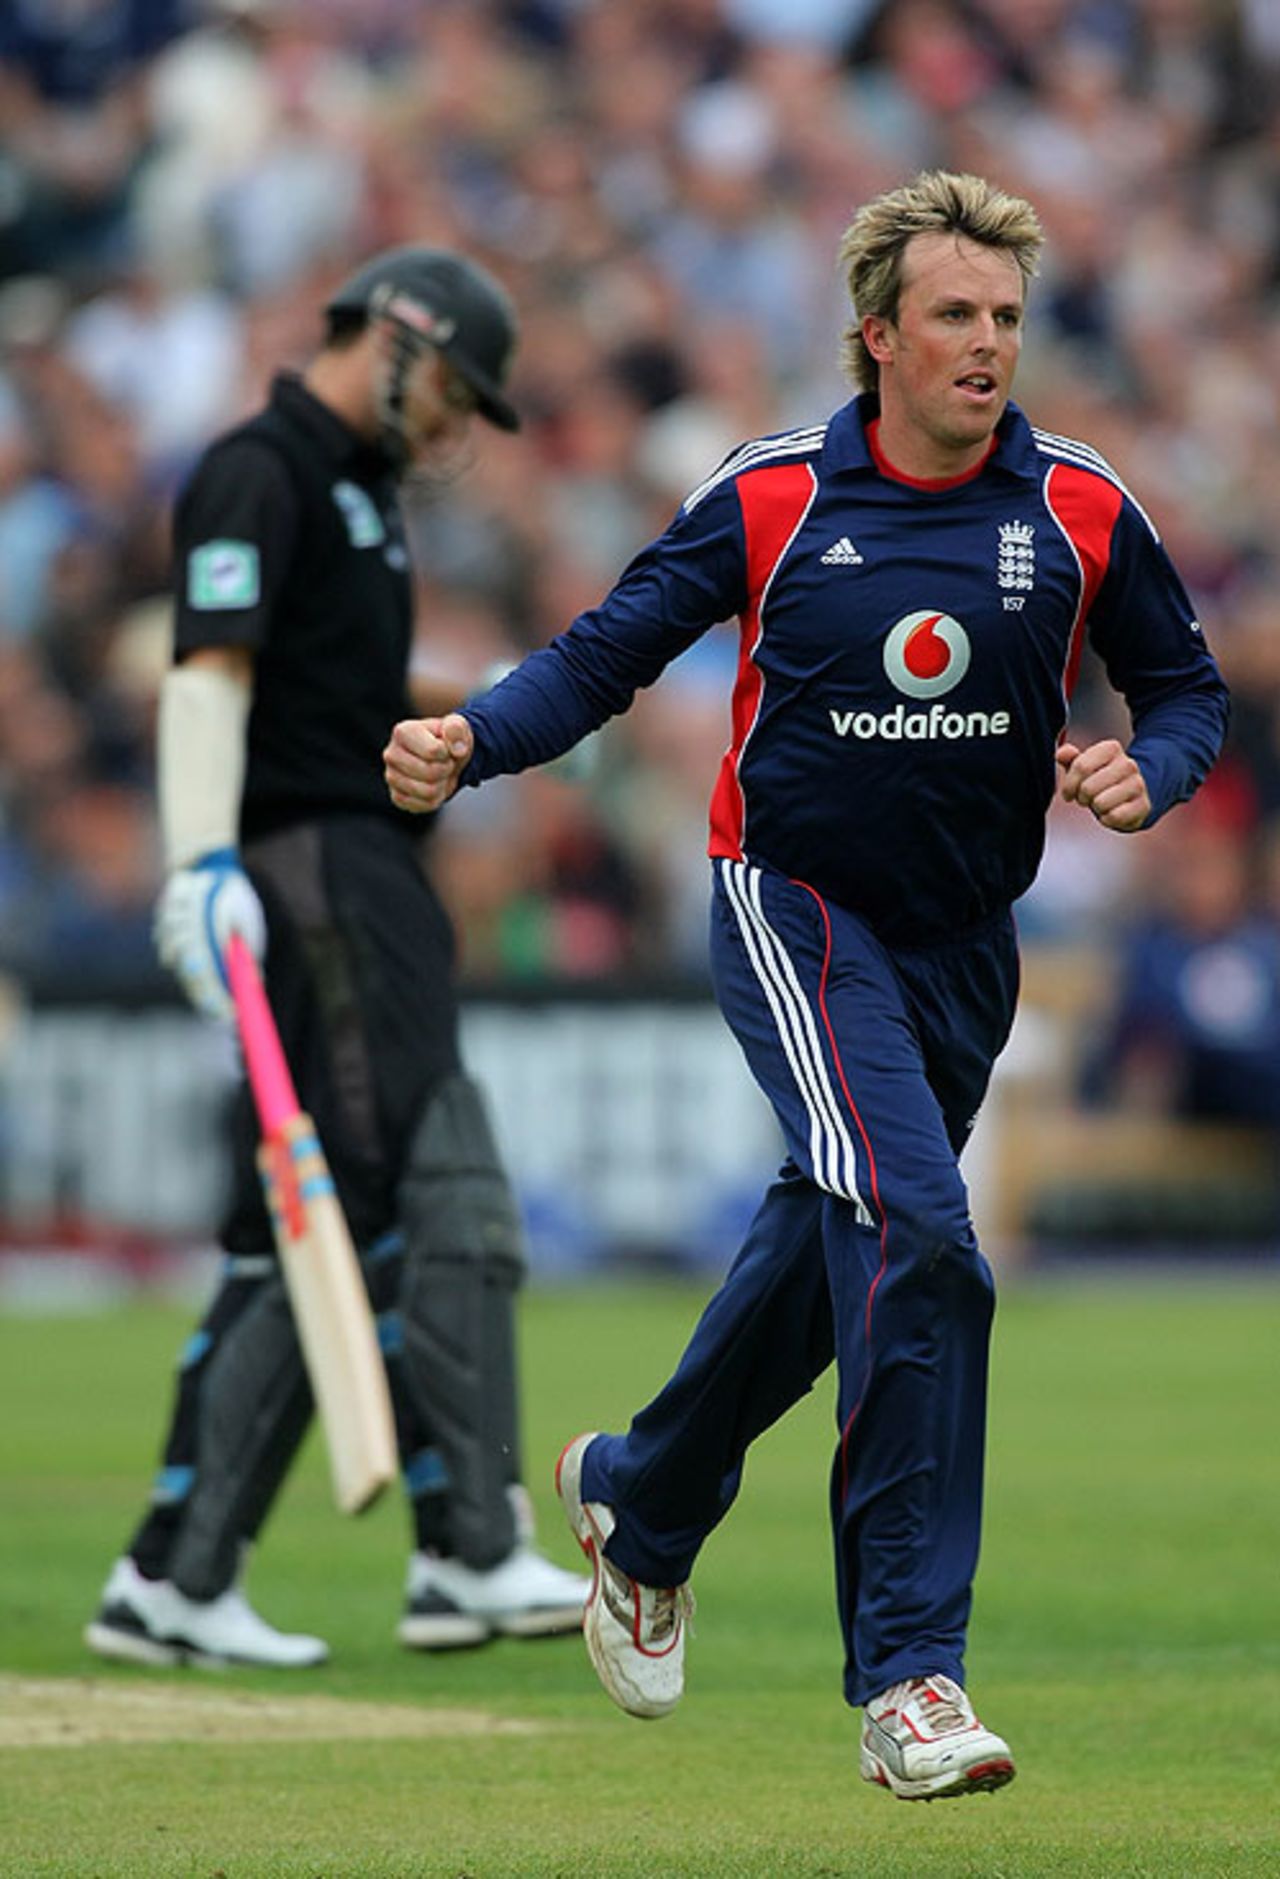 Graeme Swann snapped up Daniel Vettori for 18, England v New Zealand, 3rd ODI, Bristol, June 21, 2008